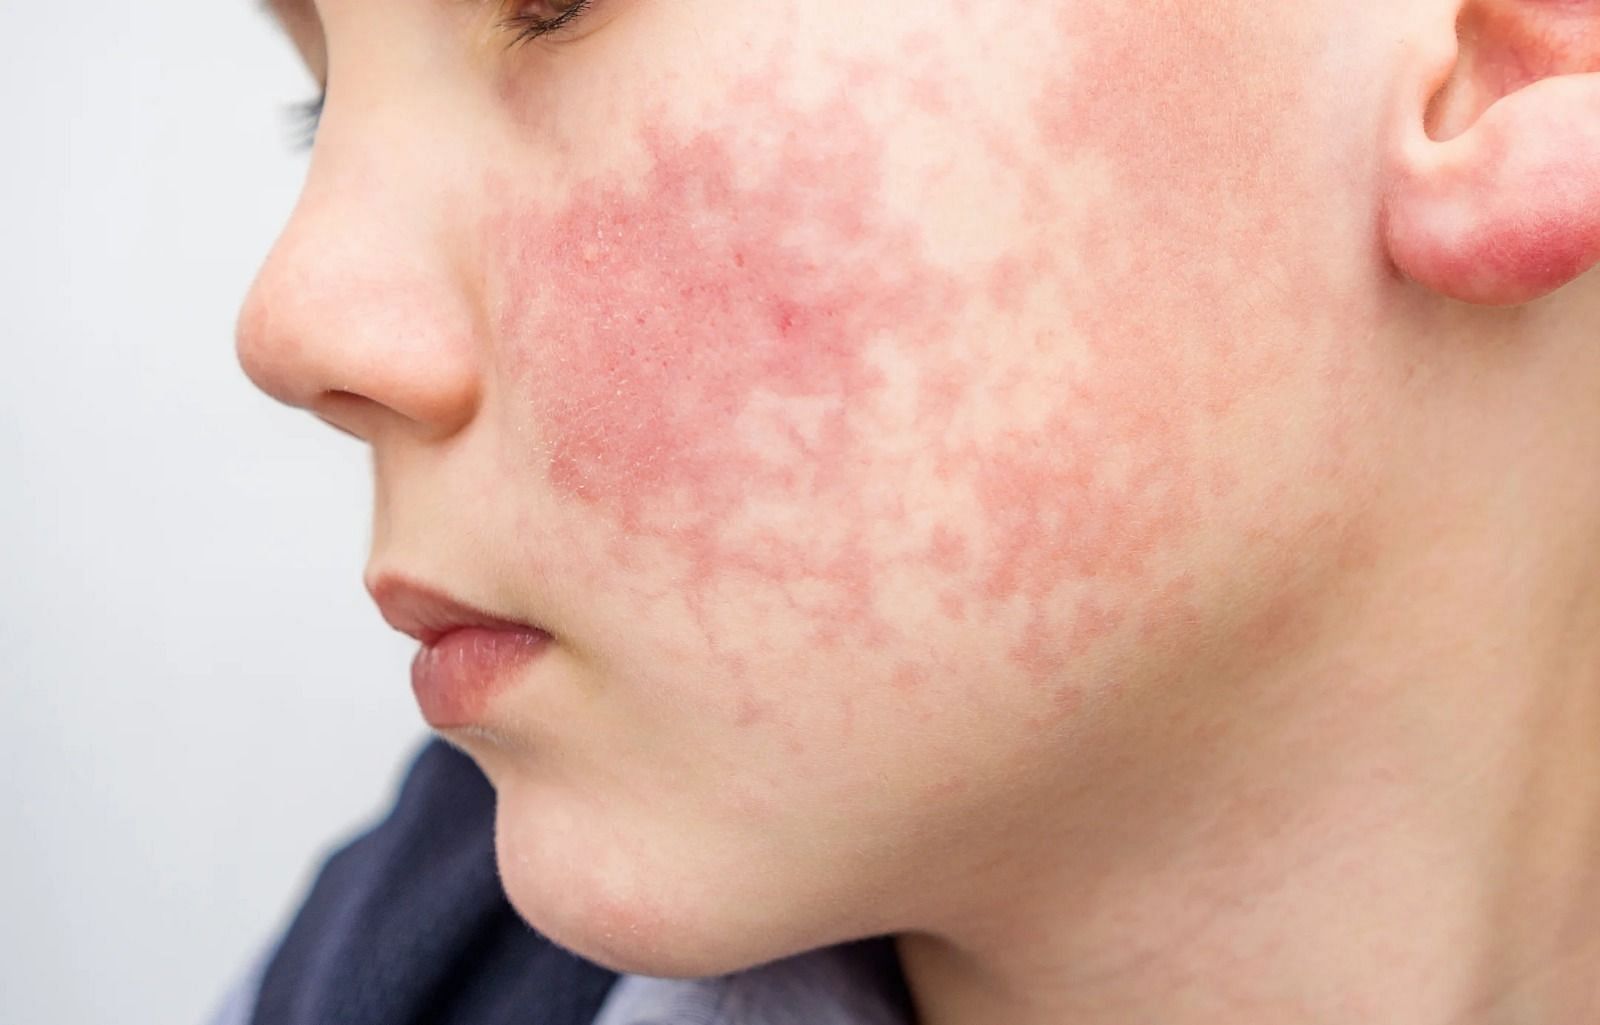 Heat rash on face (Image via Evgen_Prozhyrko/ Getty Images)